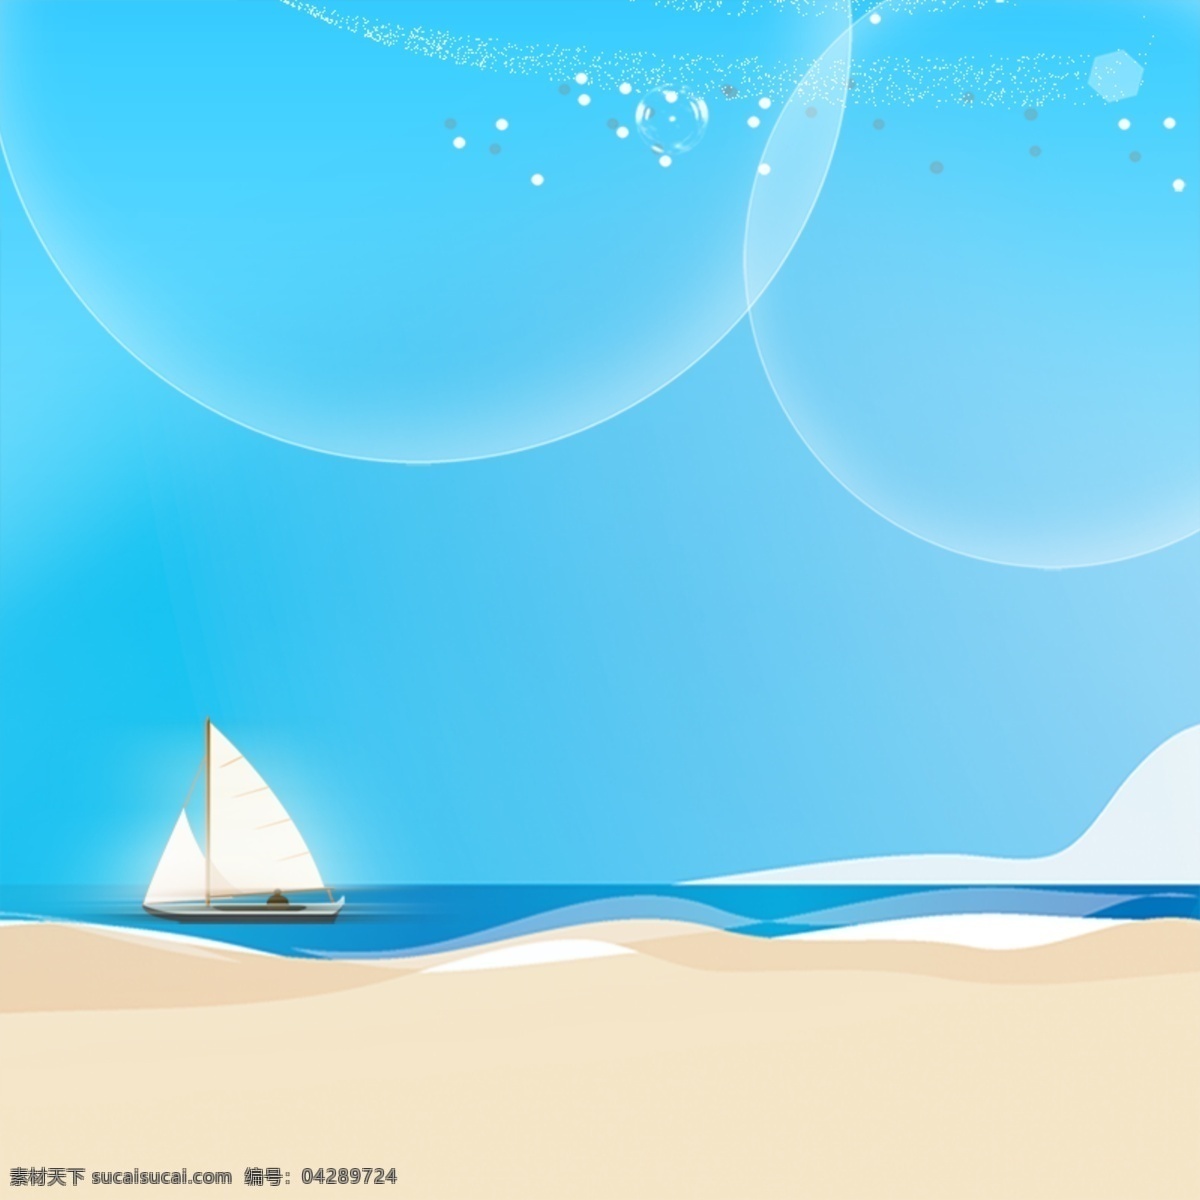 手绘风景背景 背景 大海 广告设计模板 蓝天 平面设计 沙滩 淘宝 夏日 模板下载 夏日沙滩背景 椰子树 海报 青色 天蓝色